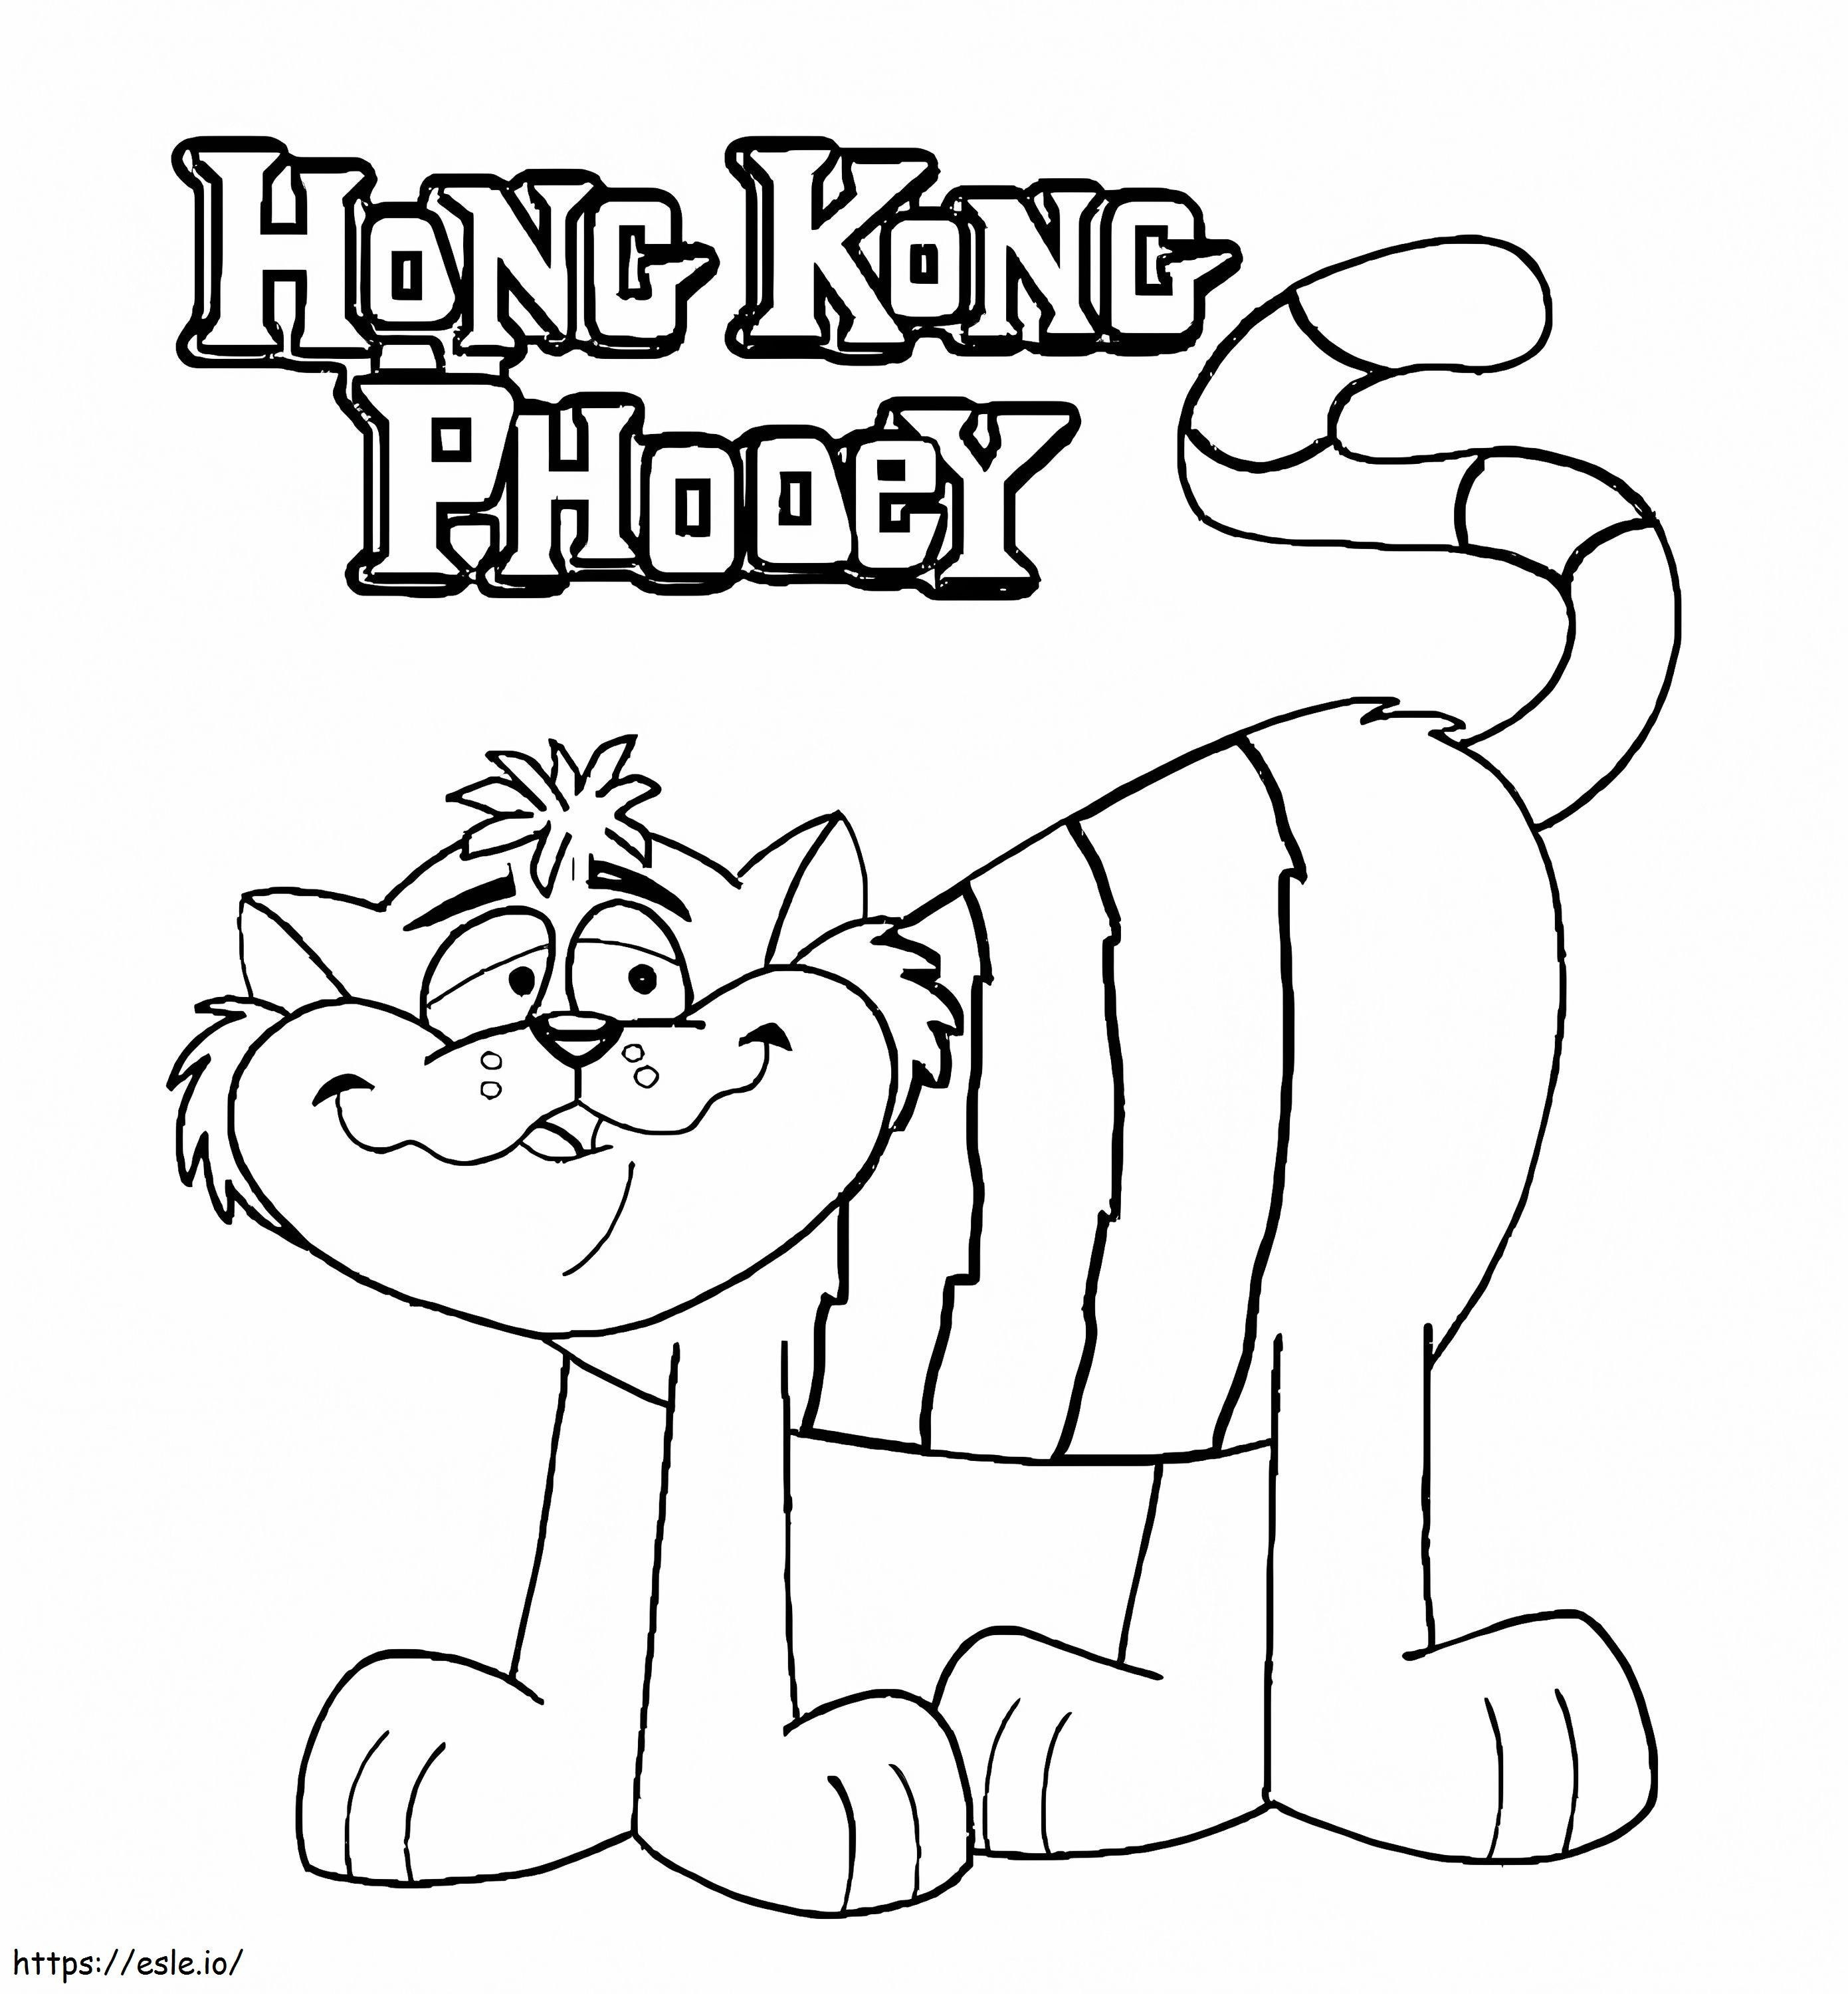 Găsiți Hong Kong Phooey de colorat